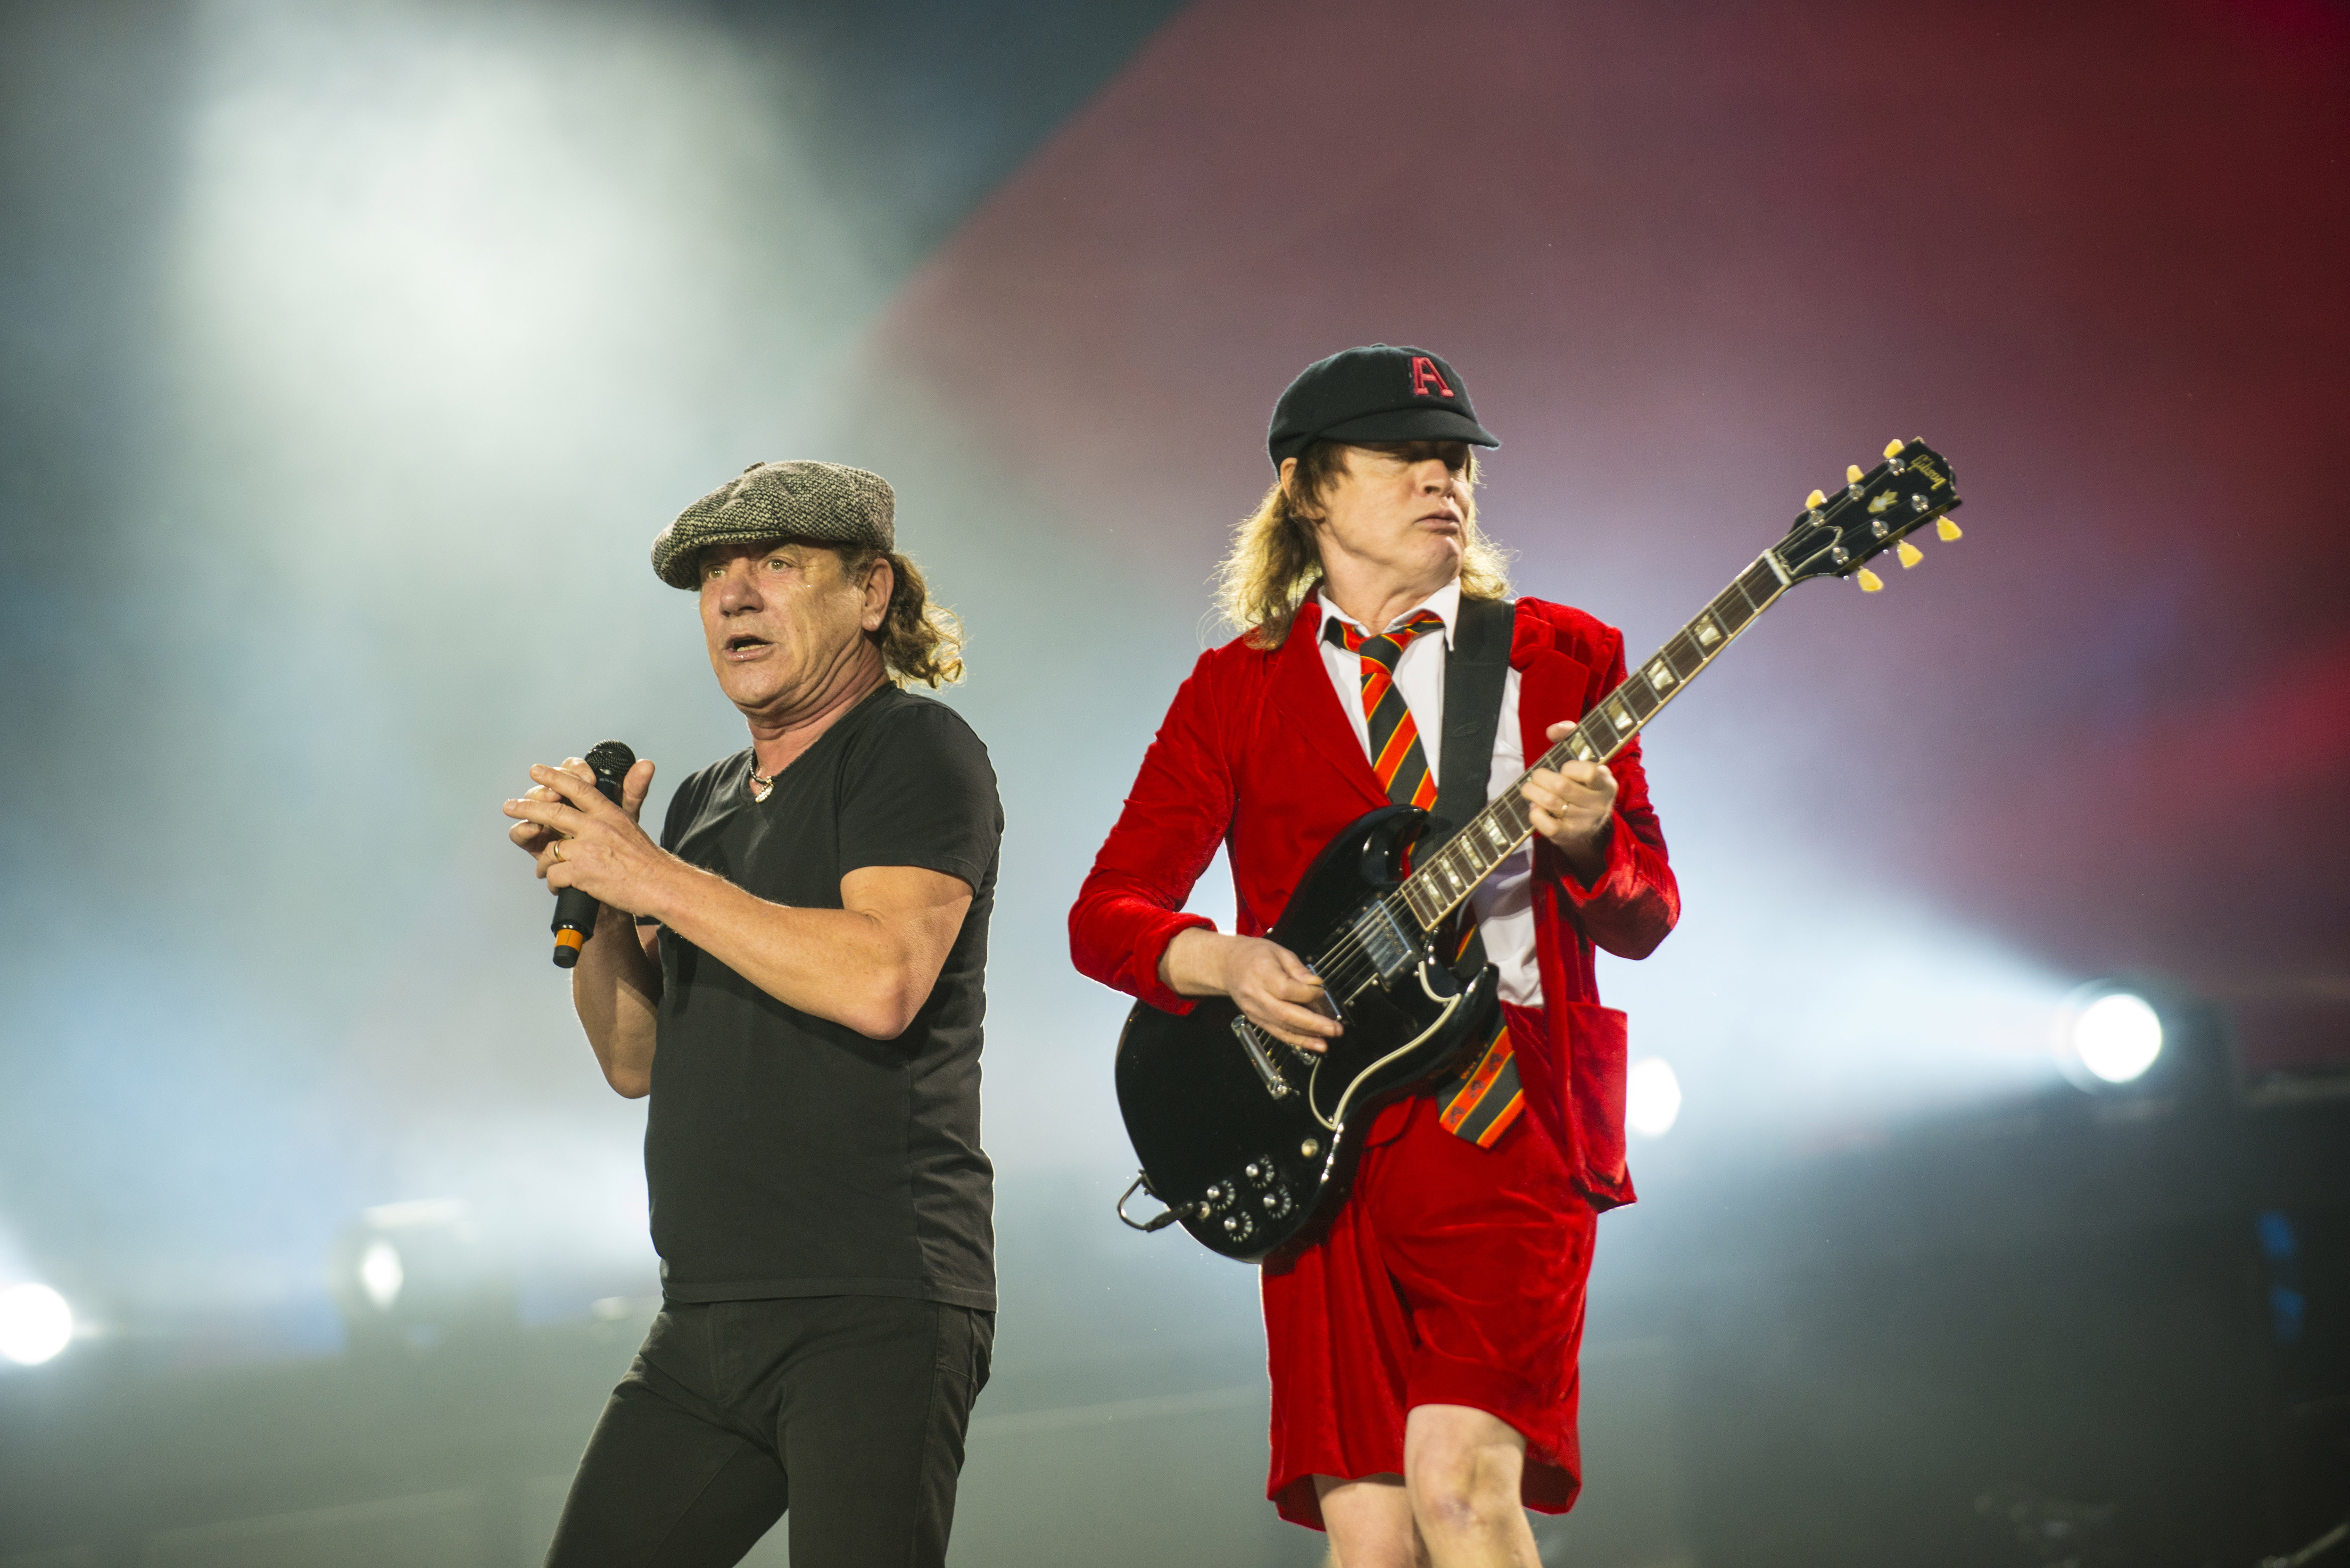 Skrive ud Sanders Forfølge AC/DC live in Berlin: 10 Dinge, die wir lieben